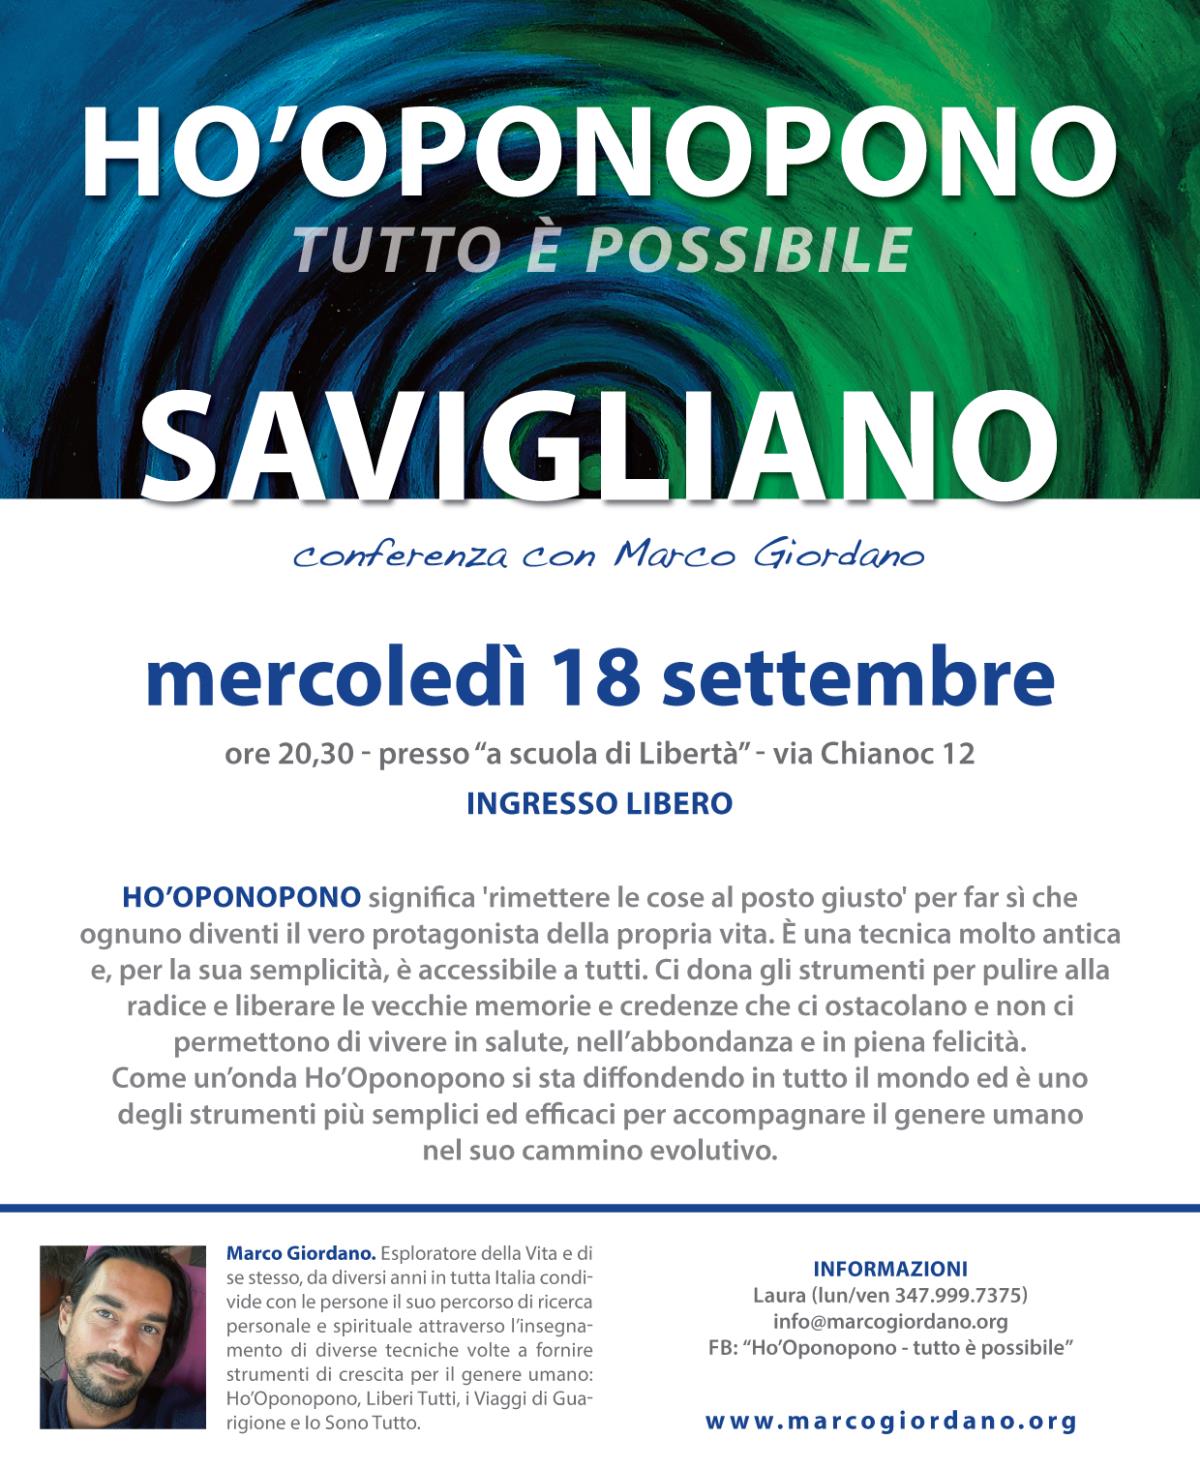 Conferenza e presentazione del corso serale <b>HO'OPONOPONO Tutto  Possibile</b> mercoled 18 settembre <b>SAVIGLIANO (CN)